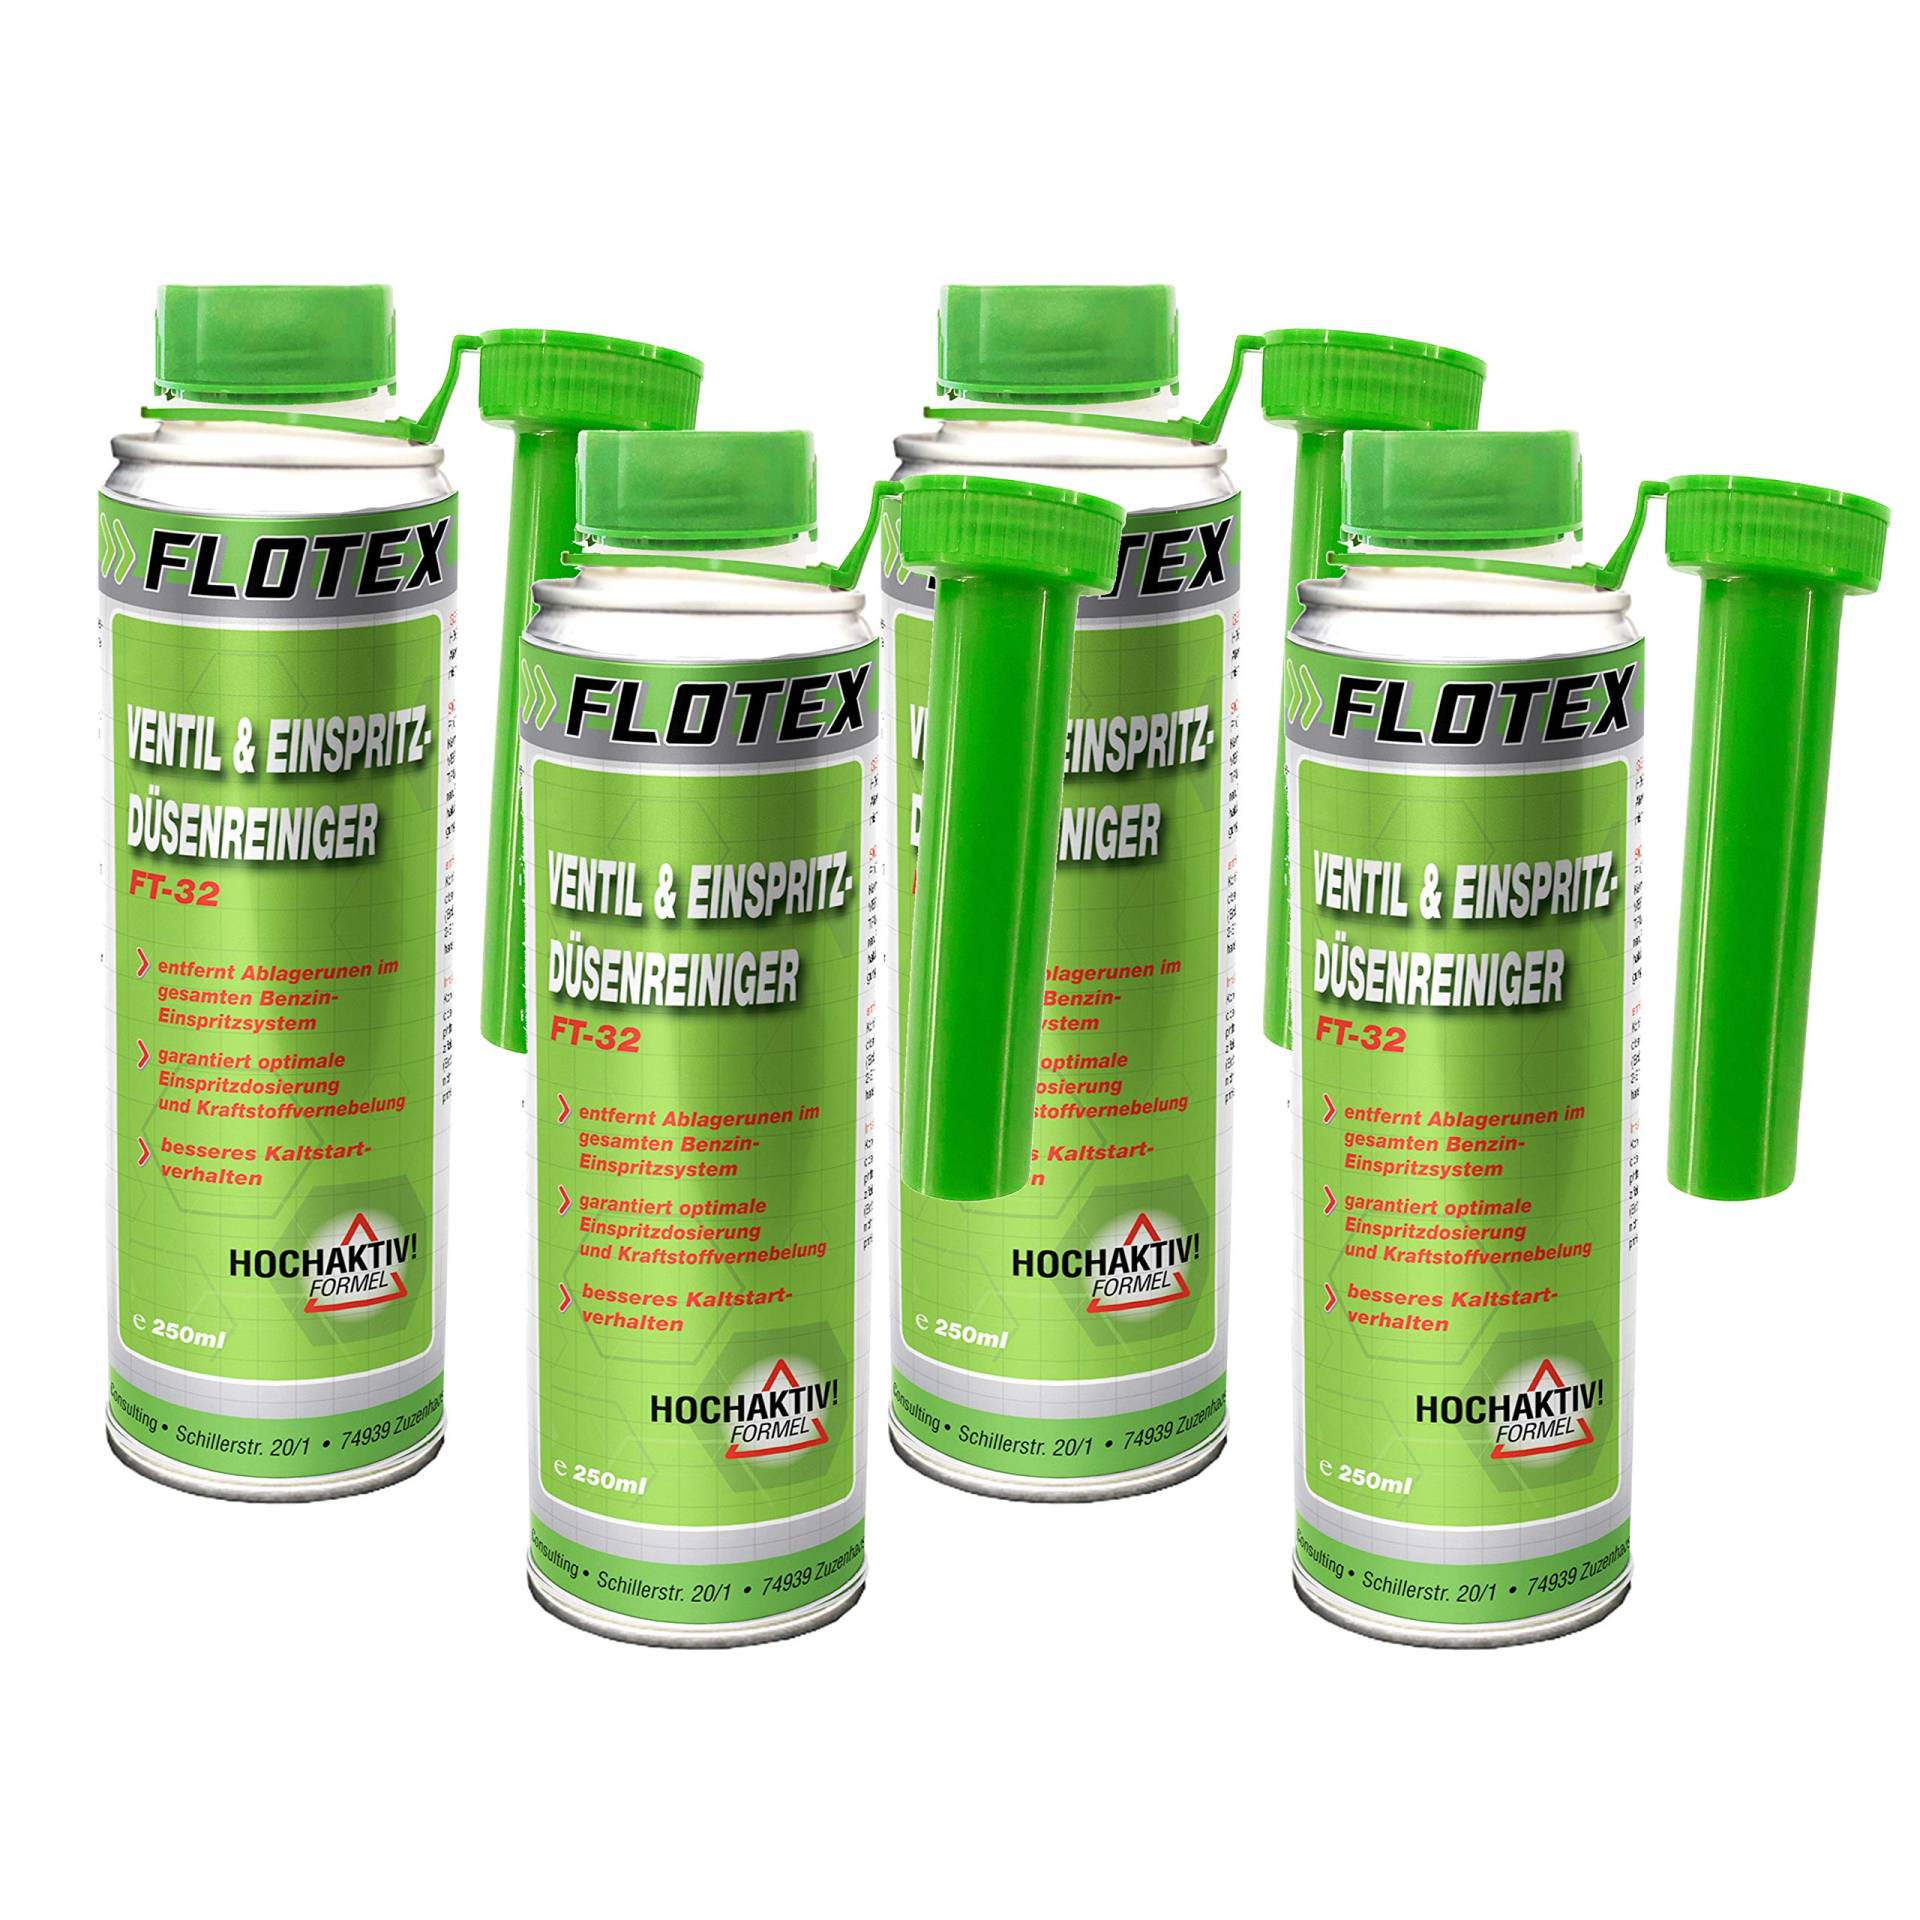 Flotex Ventil & Einspritzdüsenreiniger, 4 x 250ml Additiv entfernt Ablagerungen und reinigt Benzin Einspritzsystem von Flotex